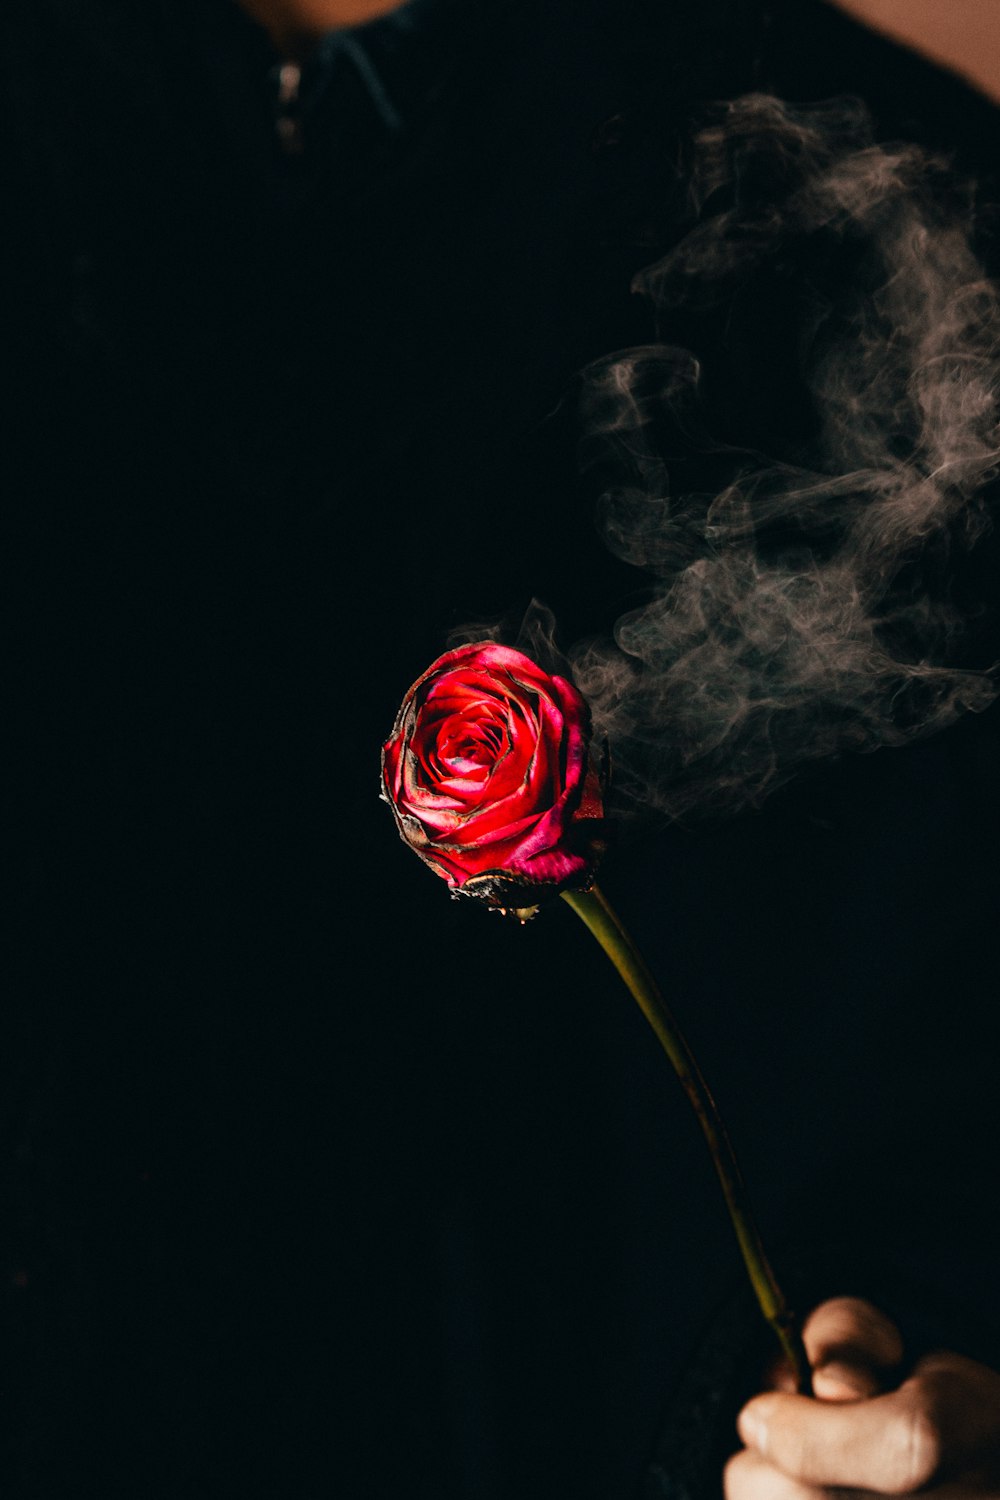 rosa roja con fondo negro